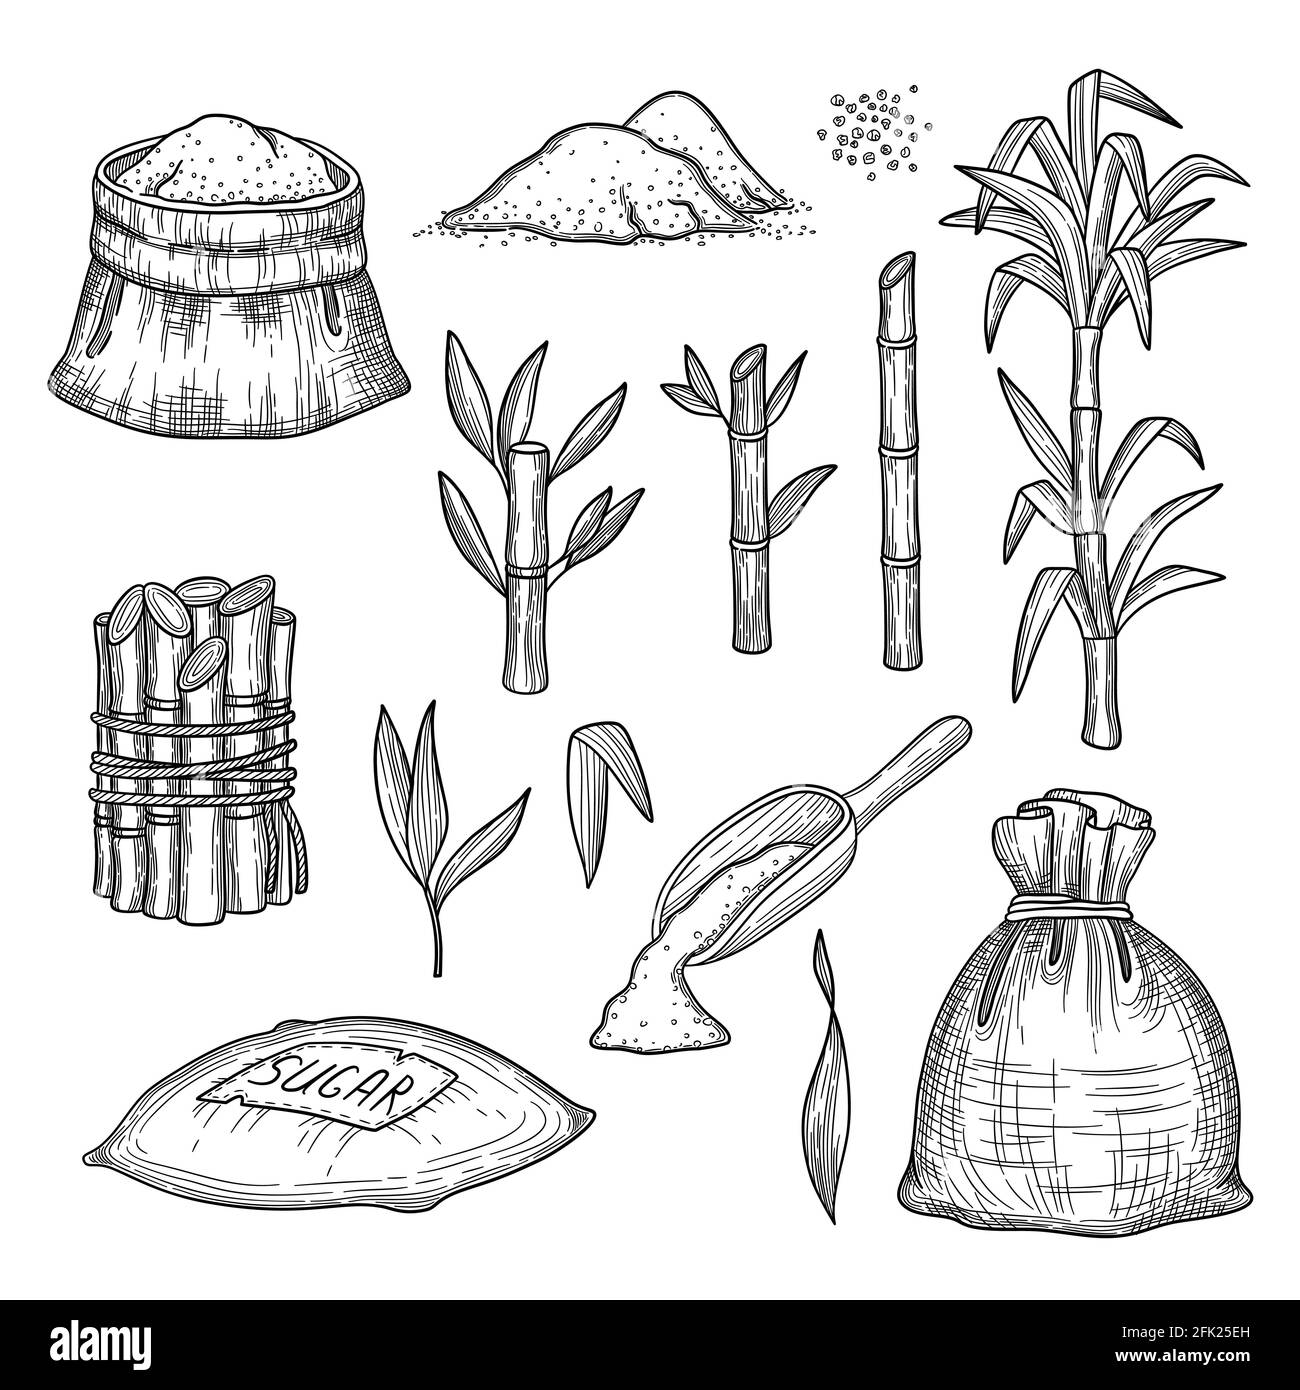 Canne à sucre. Plantes feuilles ferme frais gravure récolte sucre vecteur jeu d'illustrations dessinées à la main Illustration de Vecteur